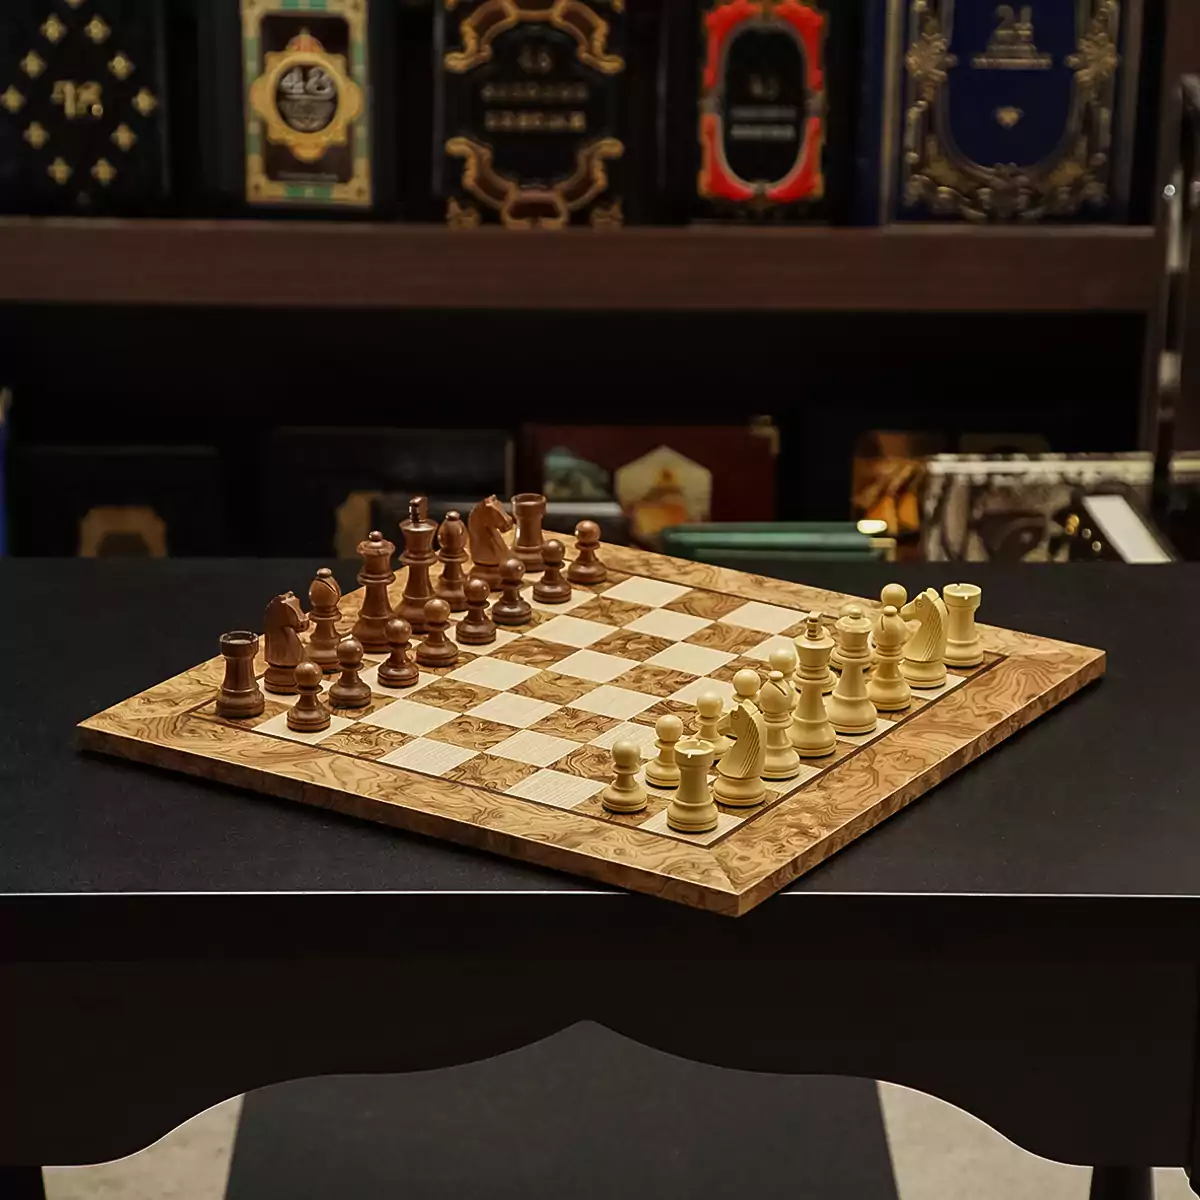 Ексклюзивні шахи "Walnut" від Manopoulos (40х40 см)